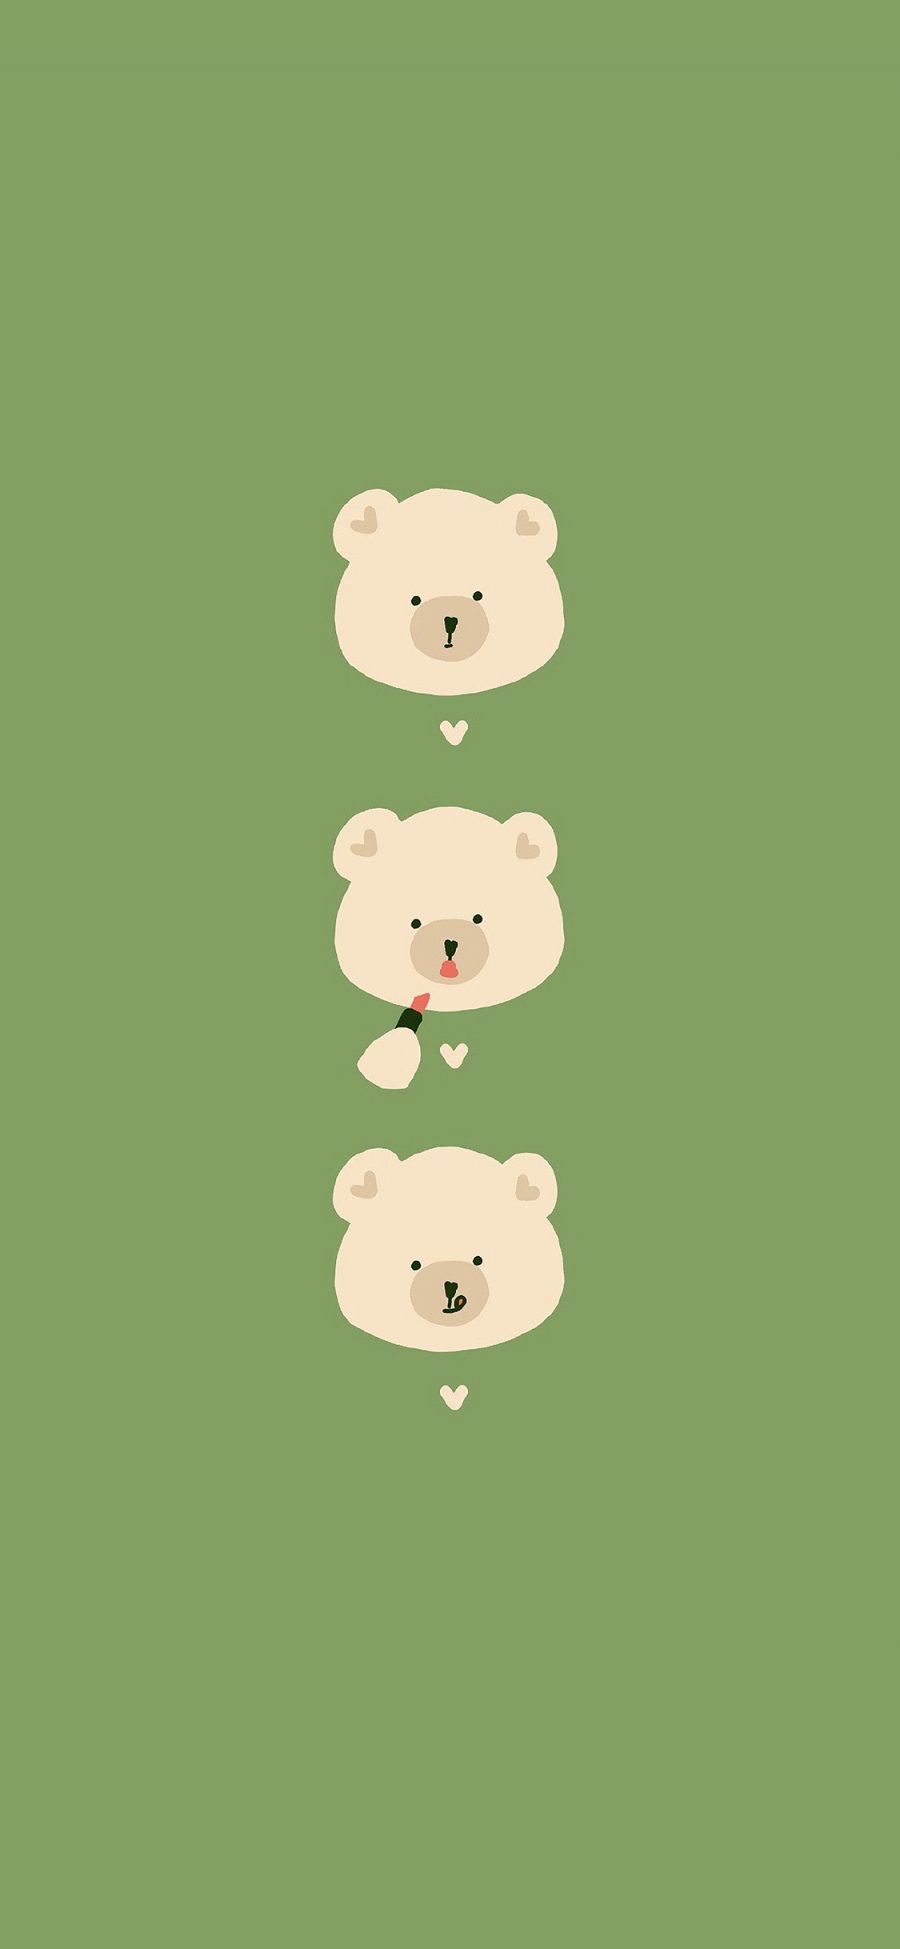 [2436×1125]小熊 可爱 卡通 绿 苹果手机动漫壁纸图片